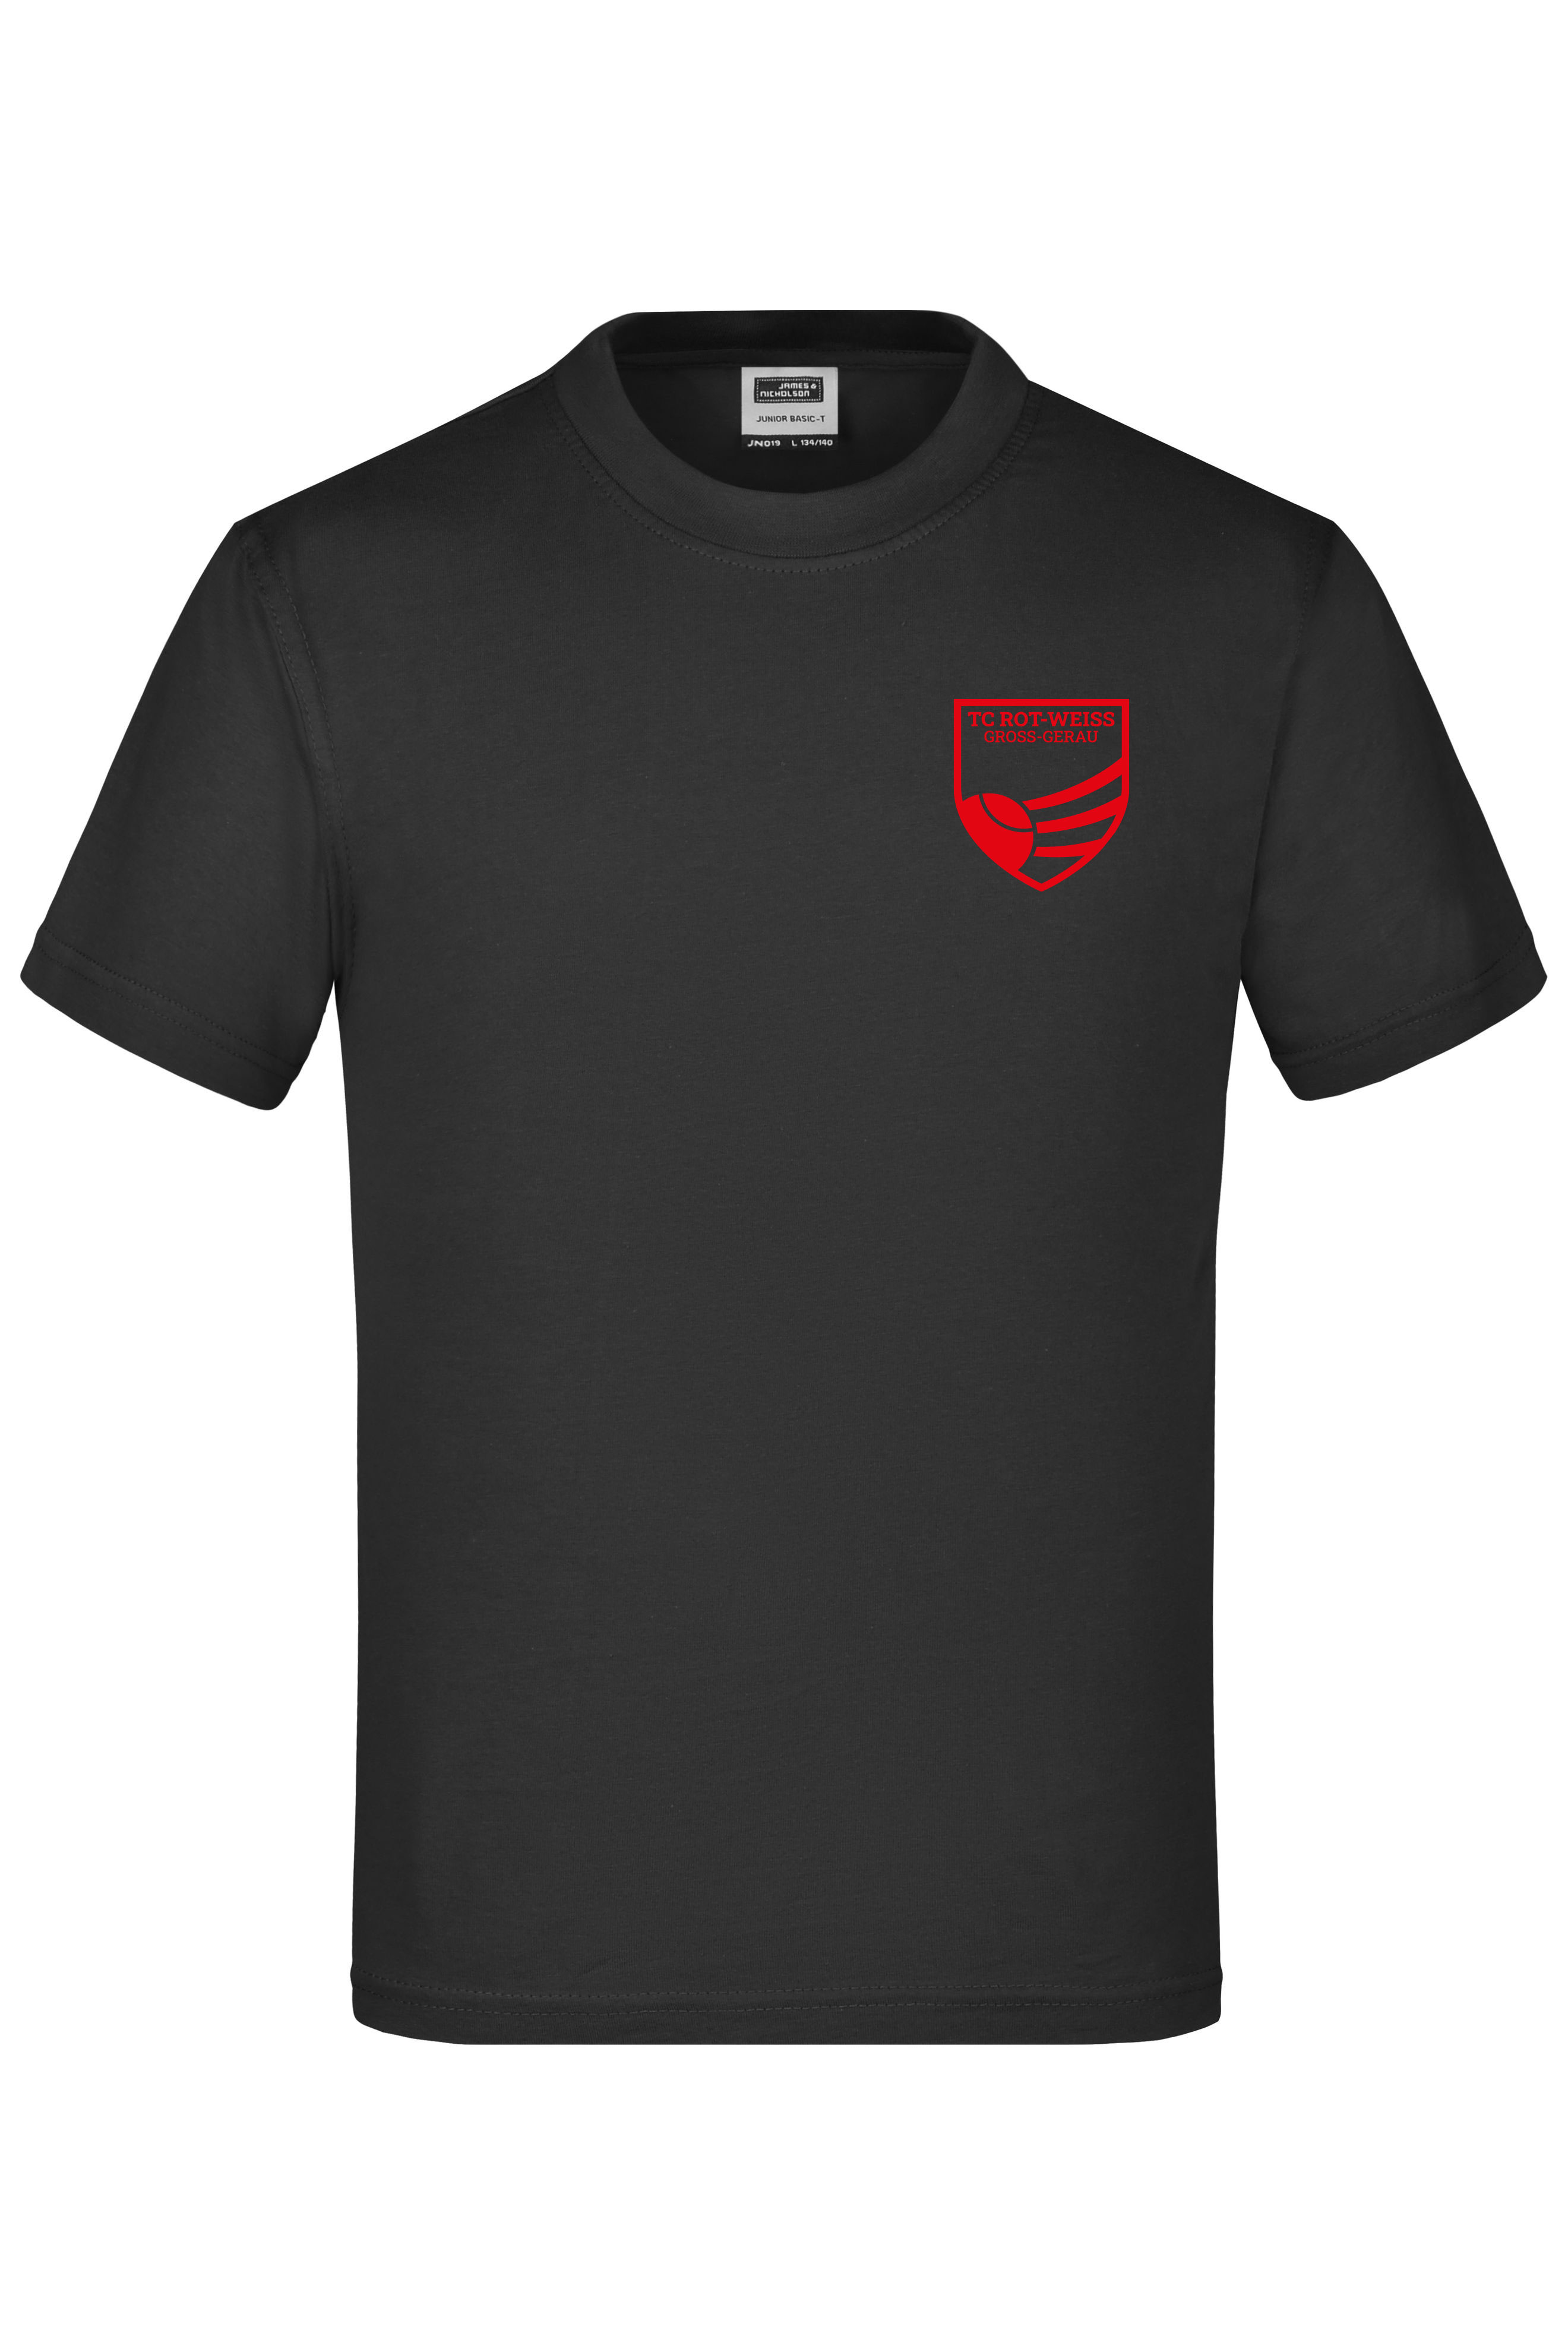 TC Rot-Weiss - Vorteil GG - Kinder T-Shirt schwarz